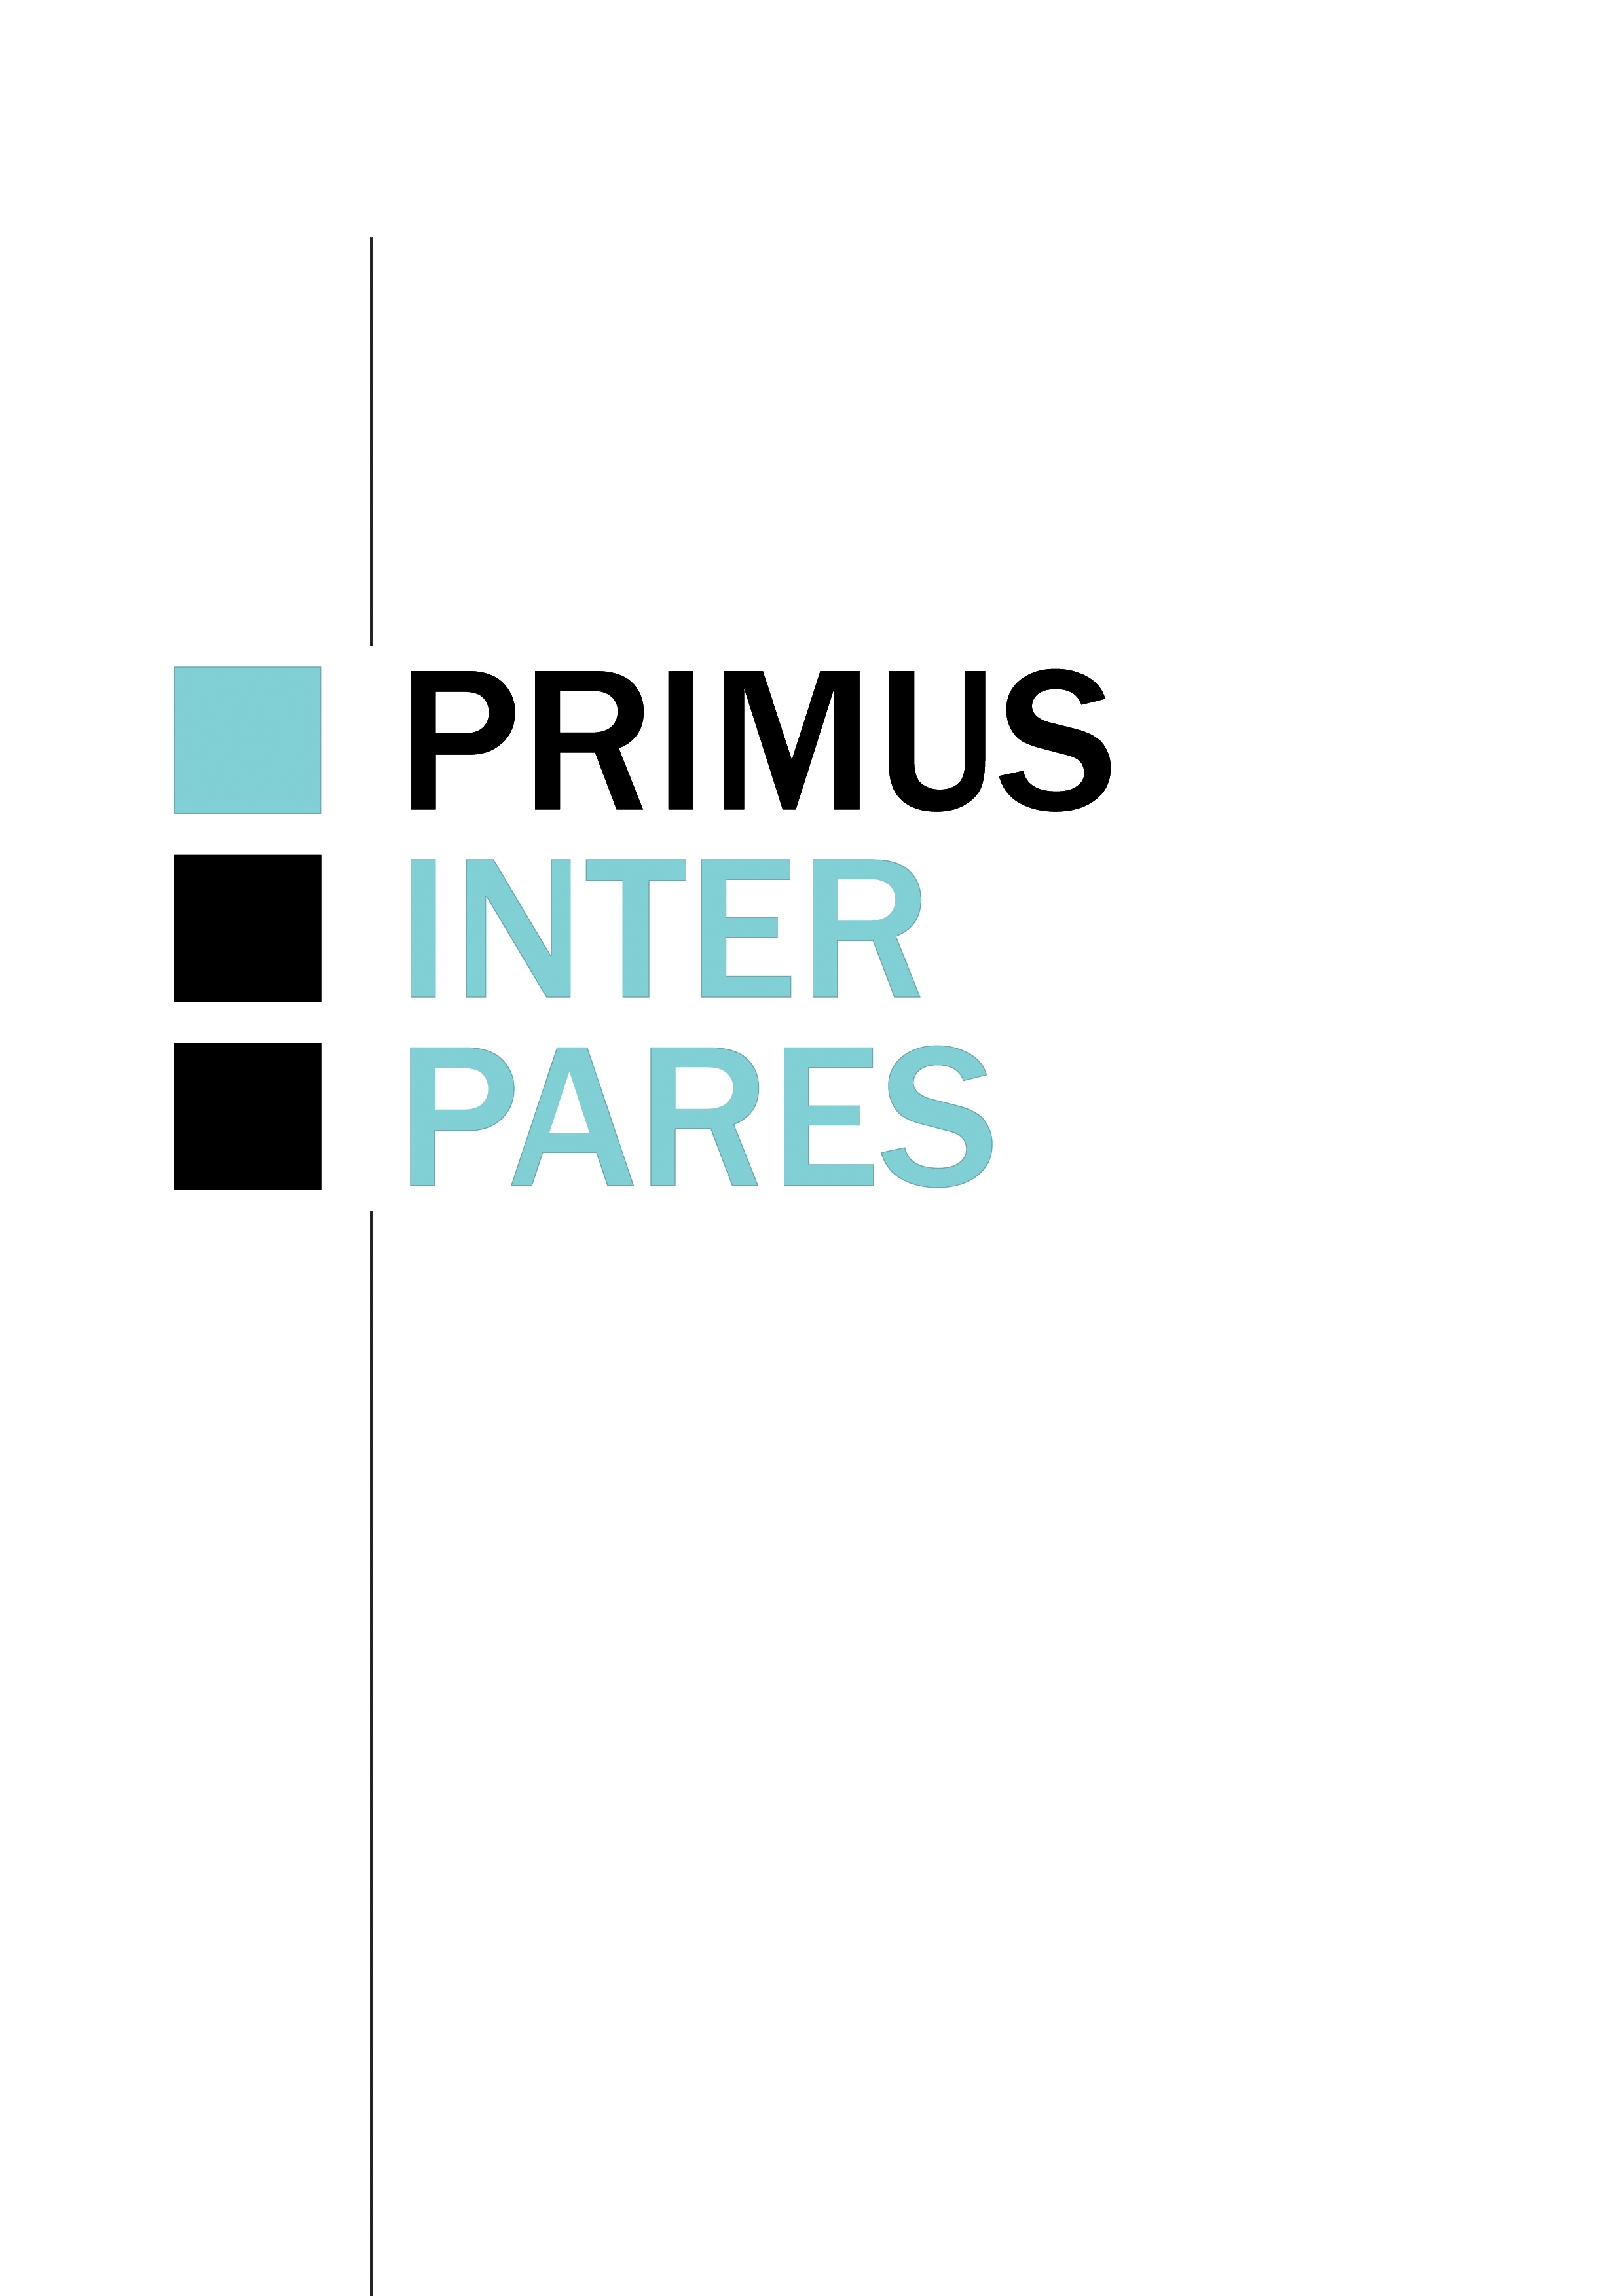 "Primus inter pares"